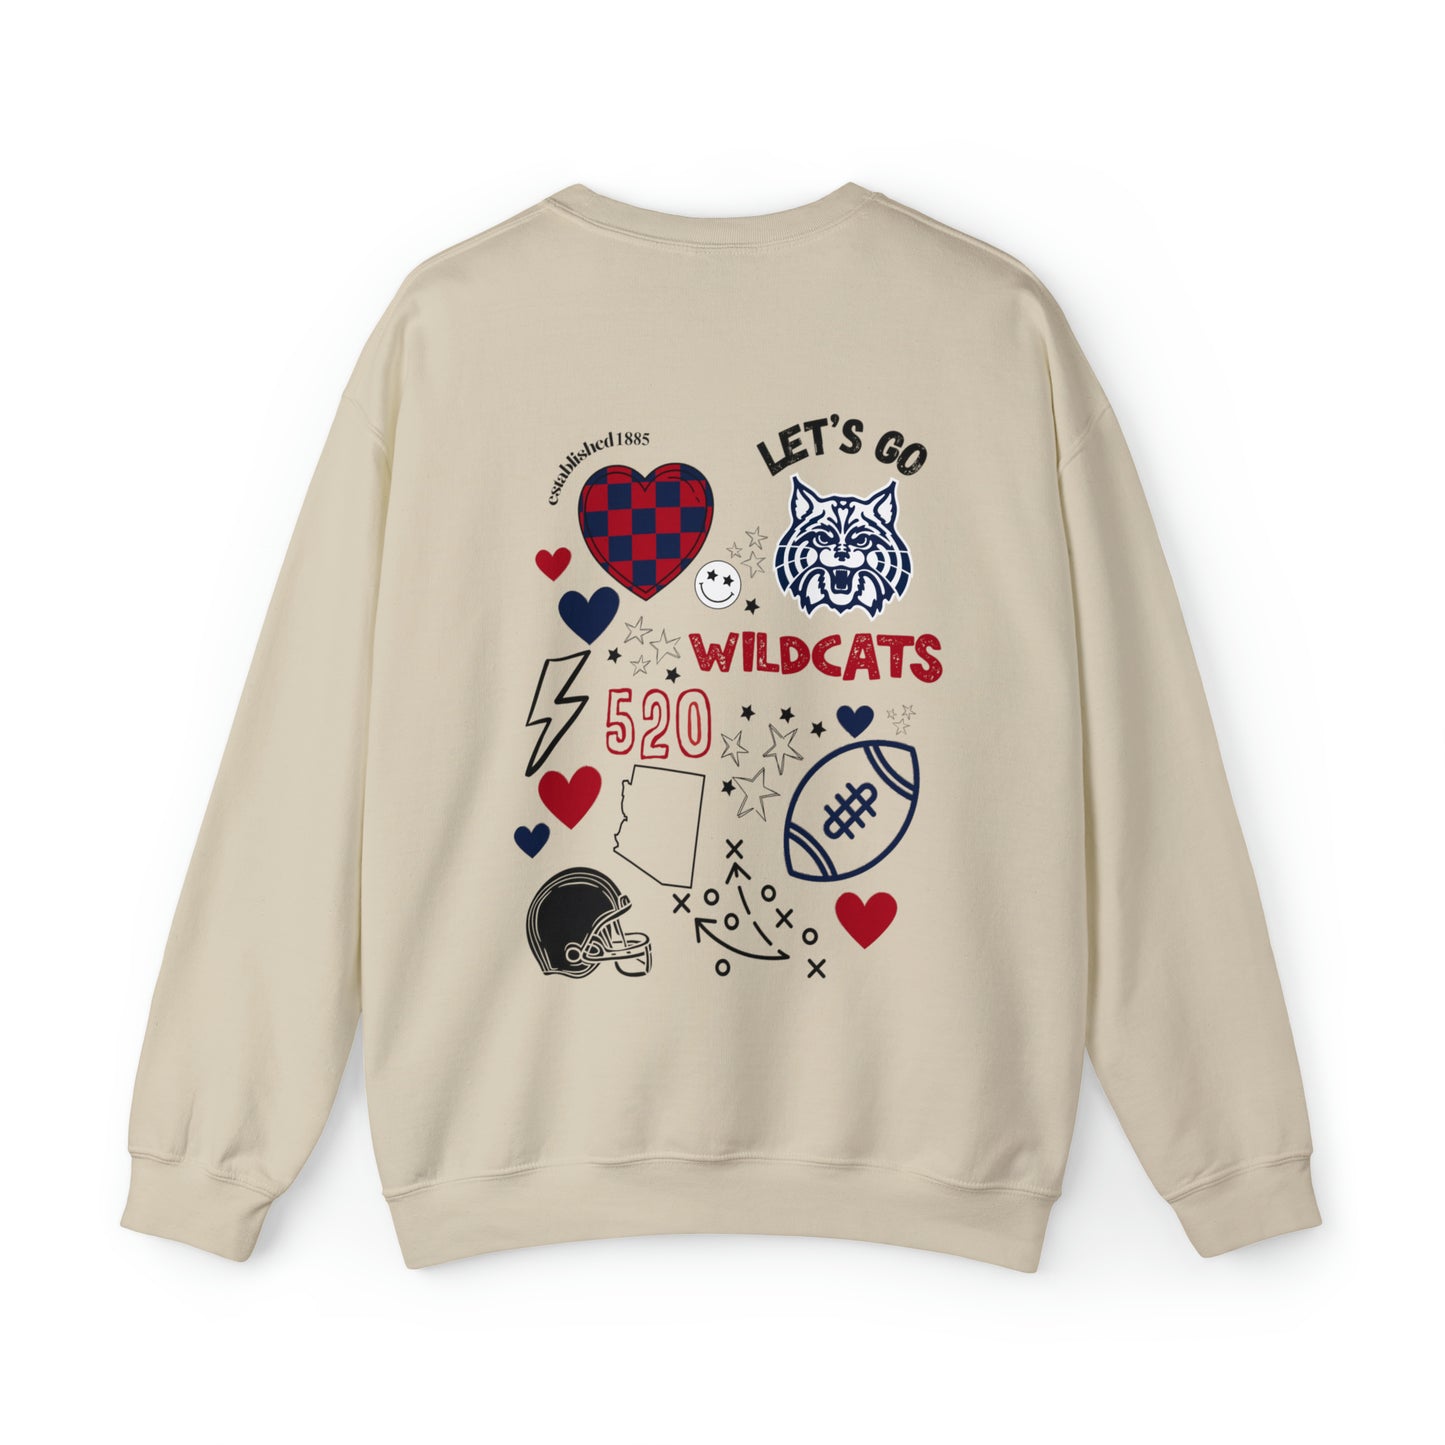 Wildcats Game Day Sweatshirt